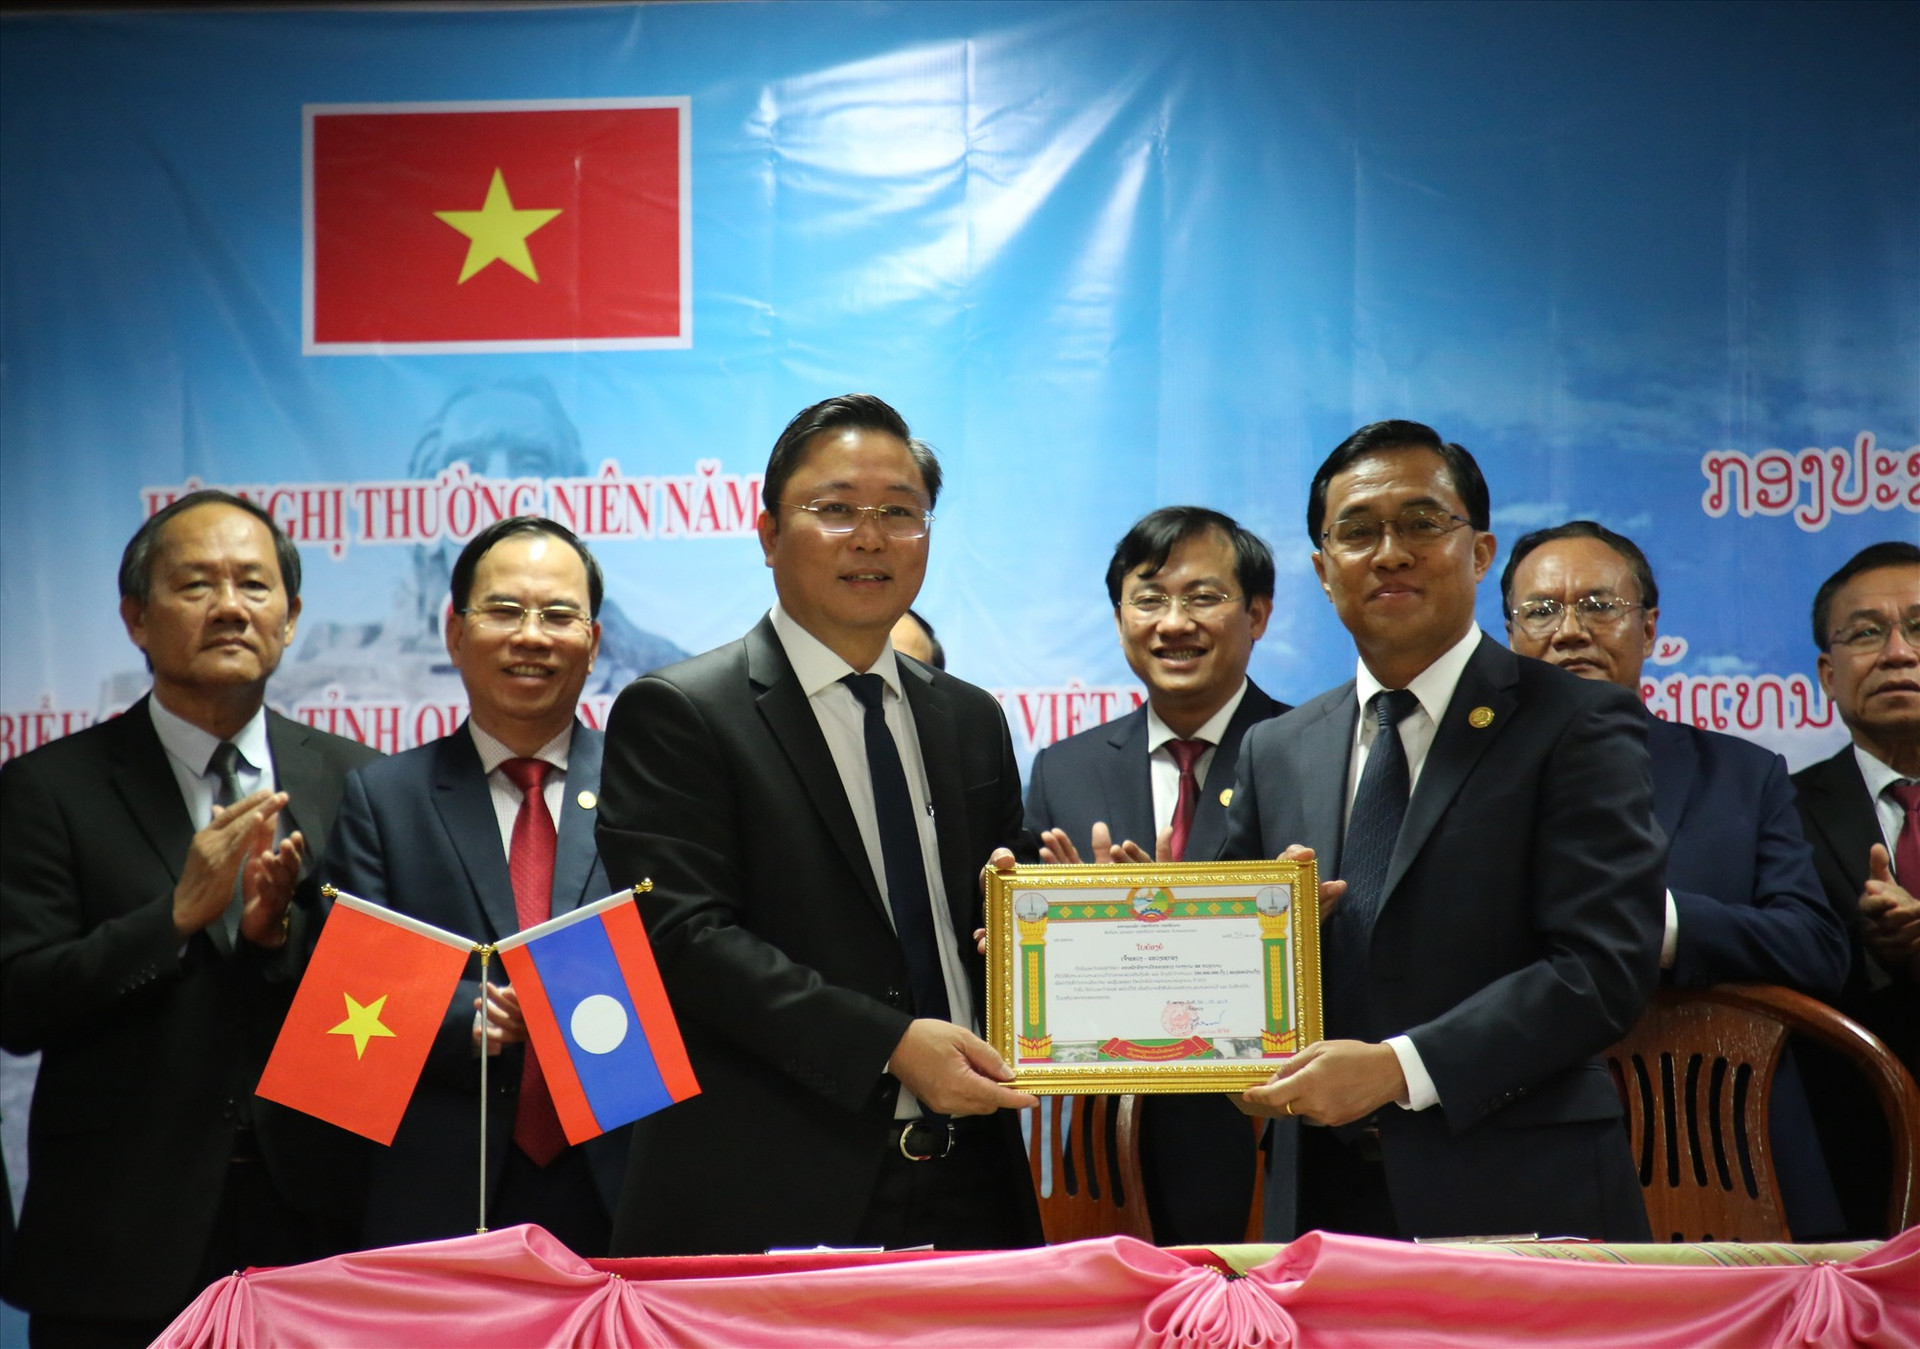 Chủ tịch UBND tỉnh Lê Trí Thanh nhận quà từ tỉnh Sê Kông. Ảnh: A.N